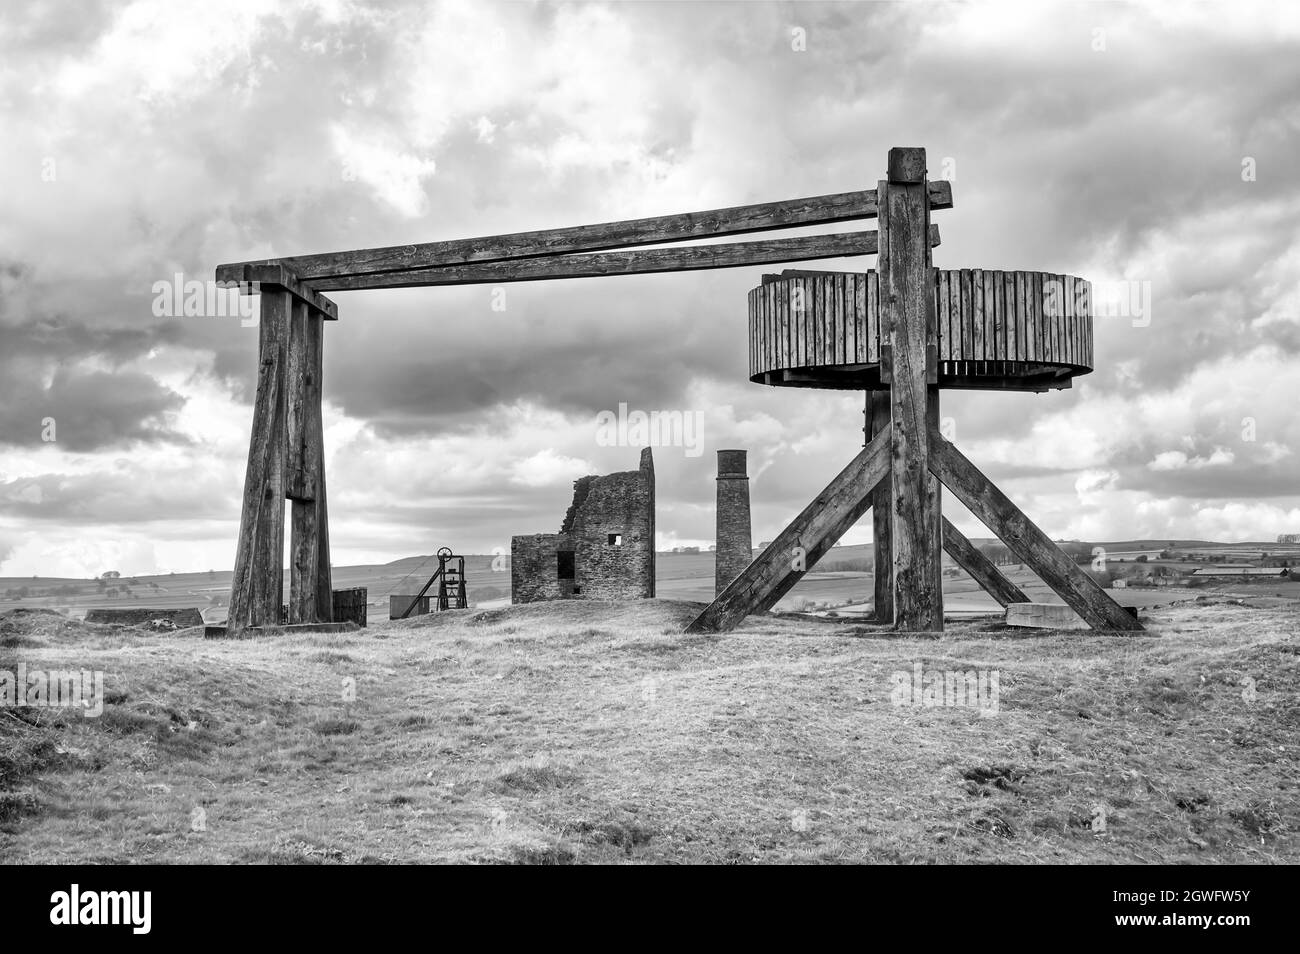 Der nachgebaute hölzerne Pferdegin mit entferntem Maschinenhaus und Kamin in der Magpie Mine, Sheldon, einer erhaltenen Bleimine im Peak District National Park Stockfoto